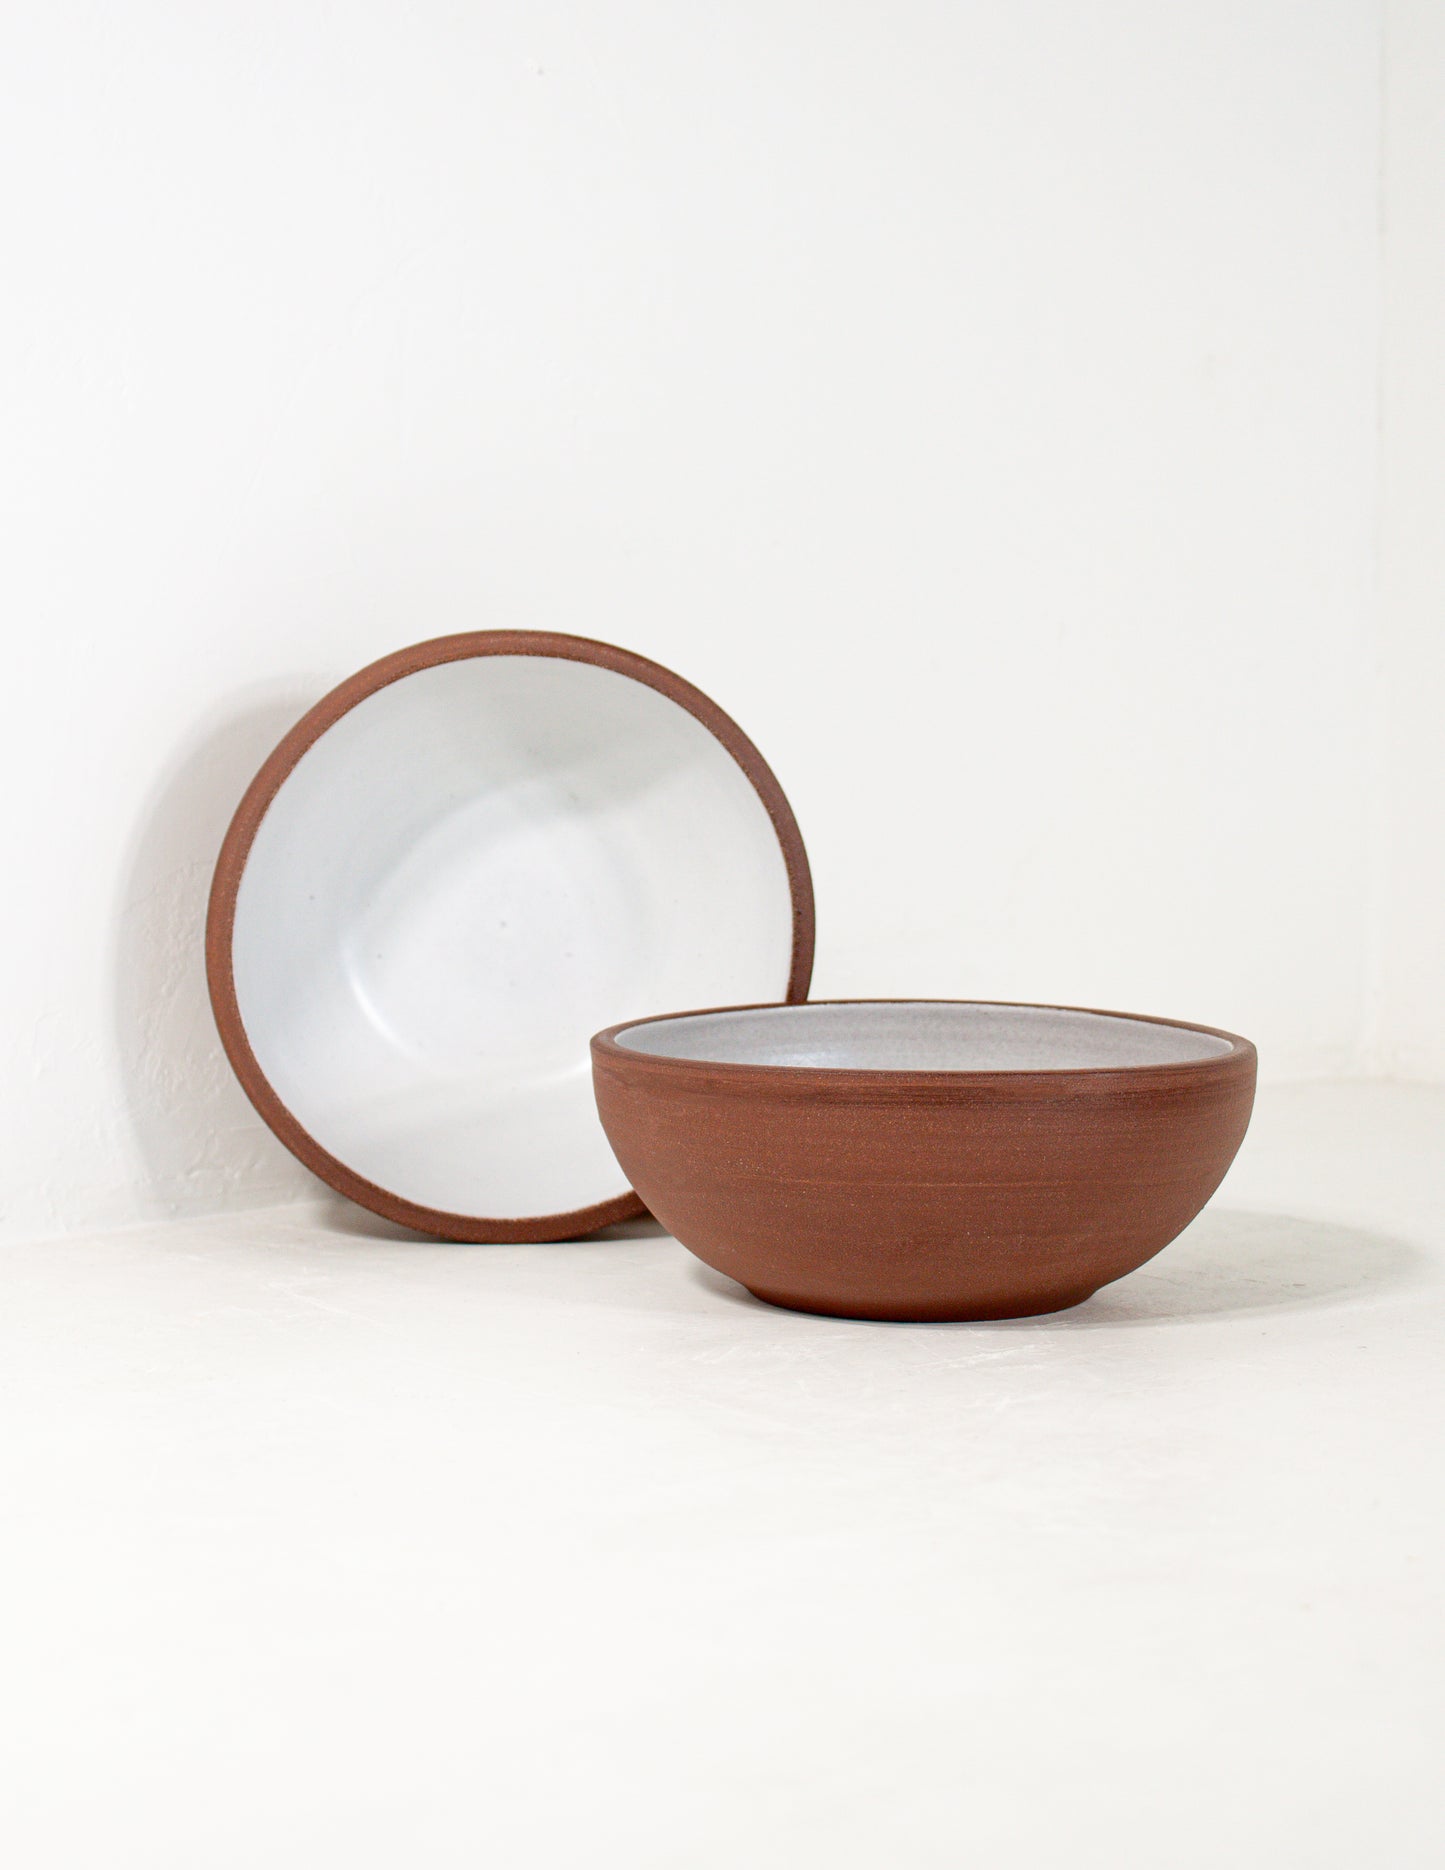 rustic modern handmade ceramic cereal bowl